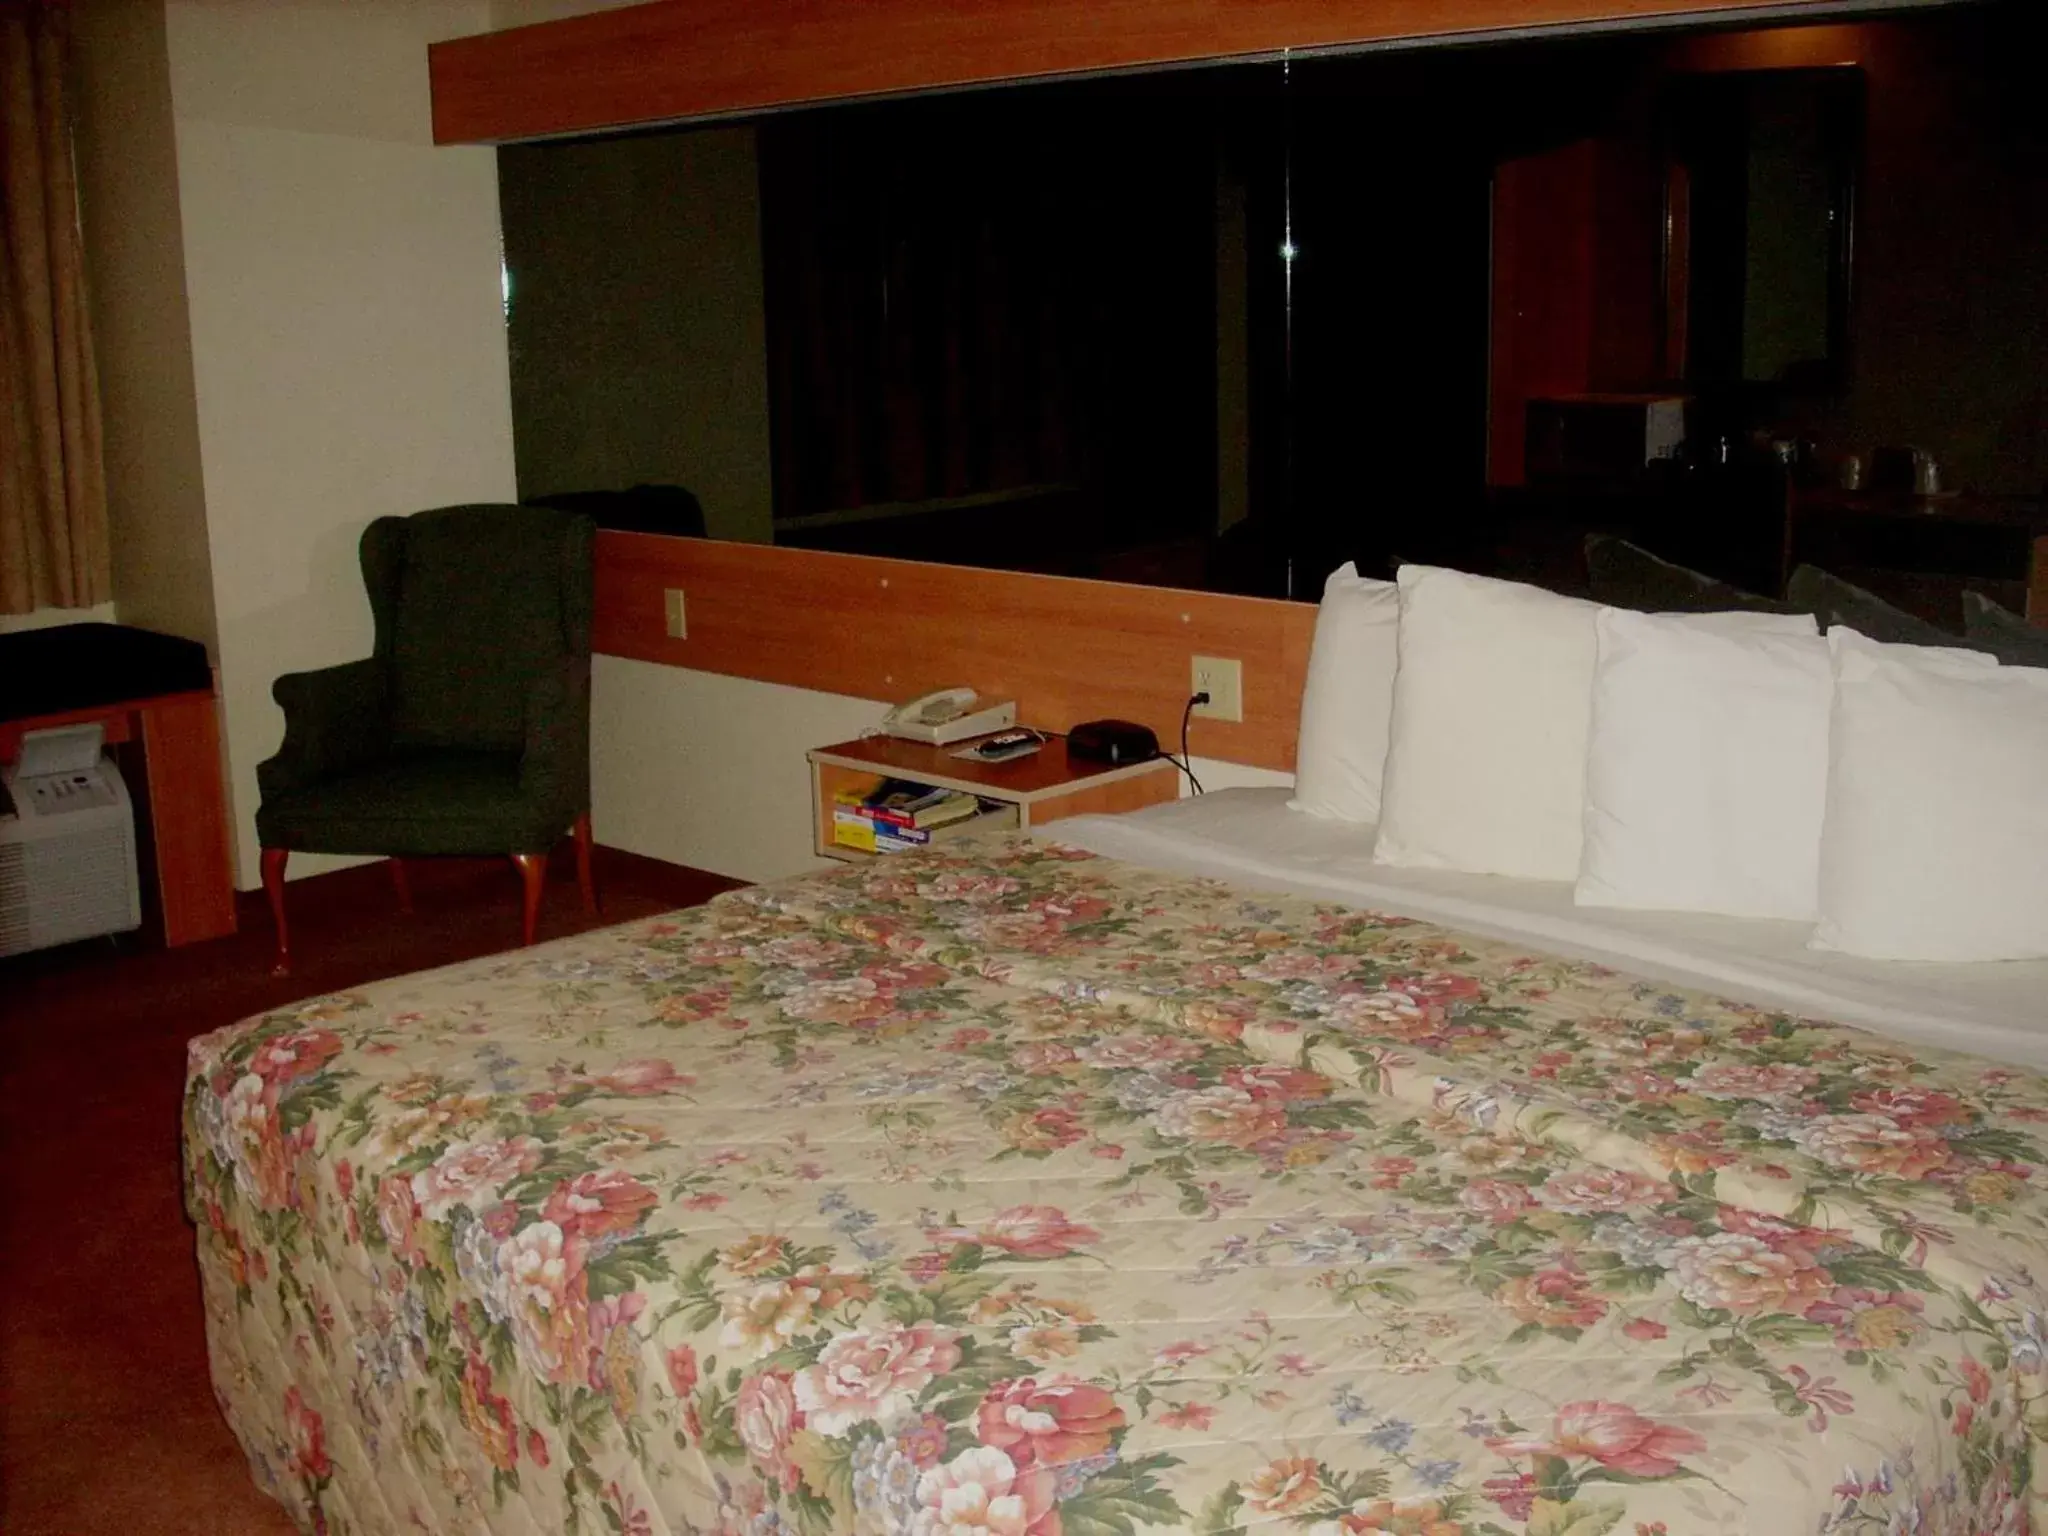 Decorative detail, Bed in Western Skies Inn & Suites